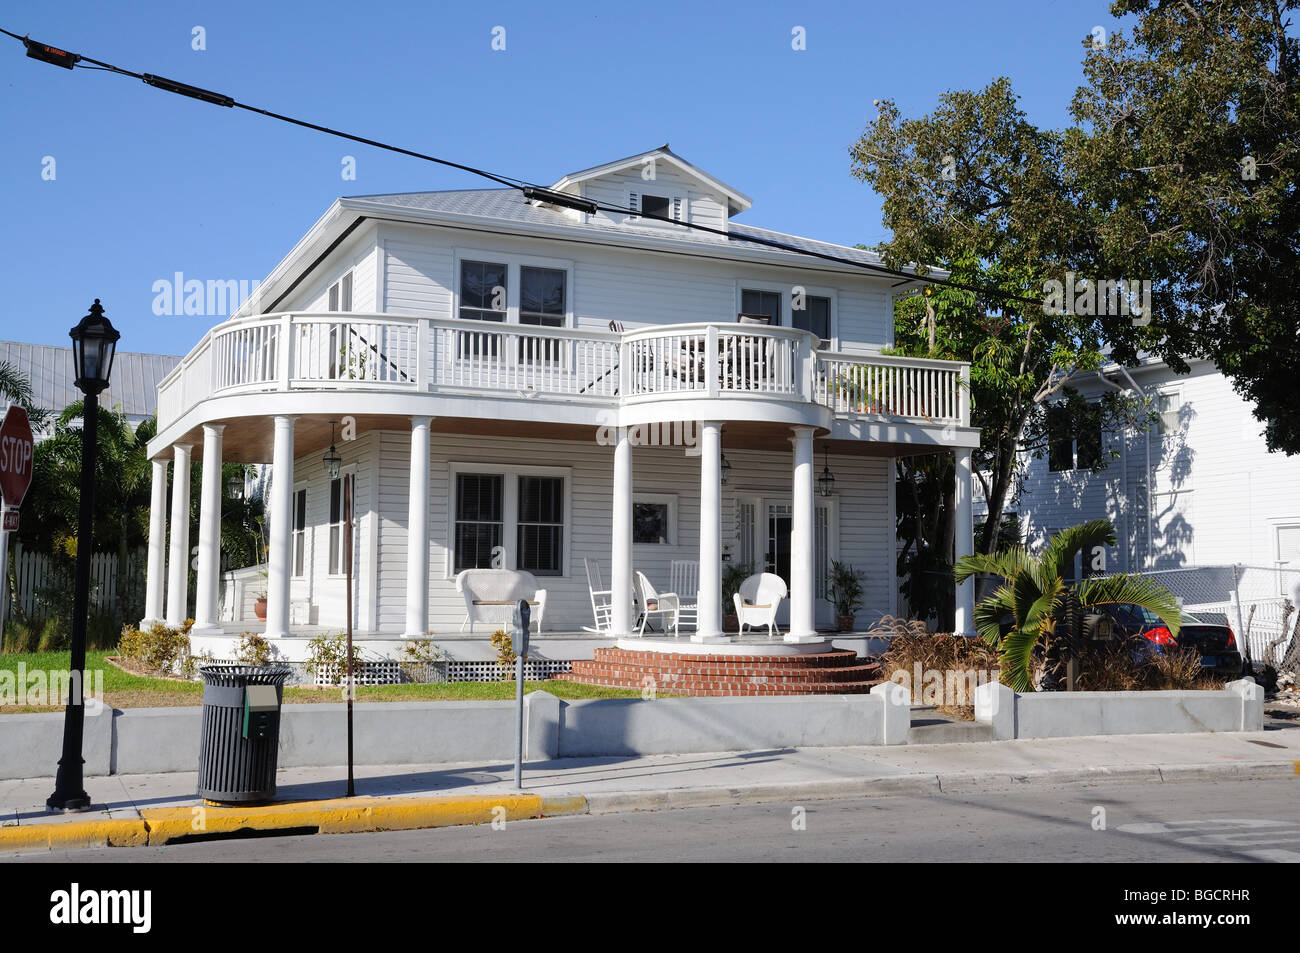 Maison typique de Key West, Floride USA Banque D'Images